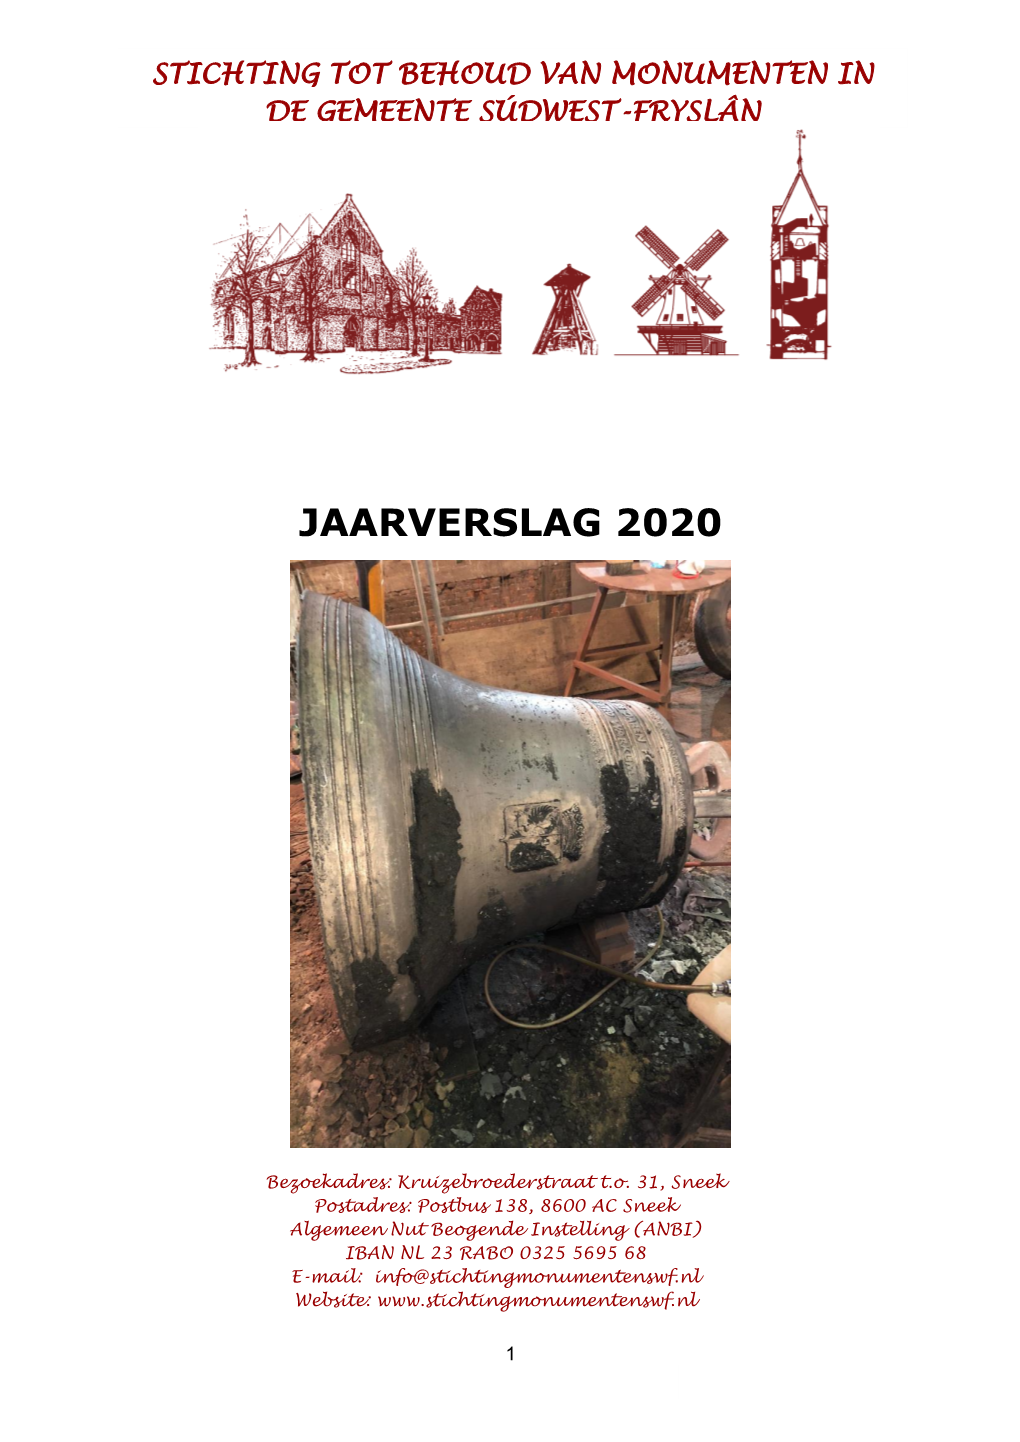 Jaarverslag 2020 DE GEMEENTE SÚDWEST-FRYSLÂN